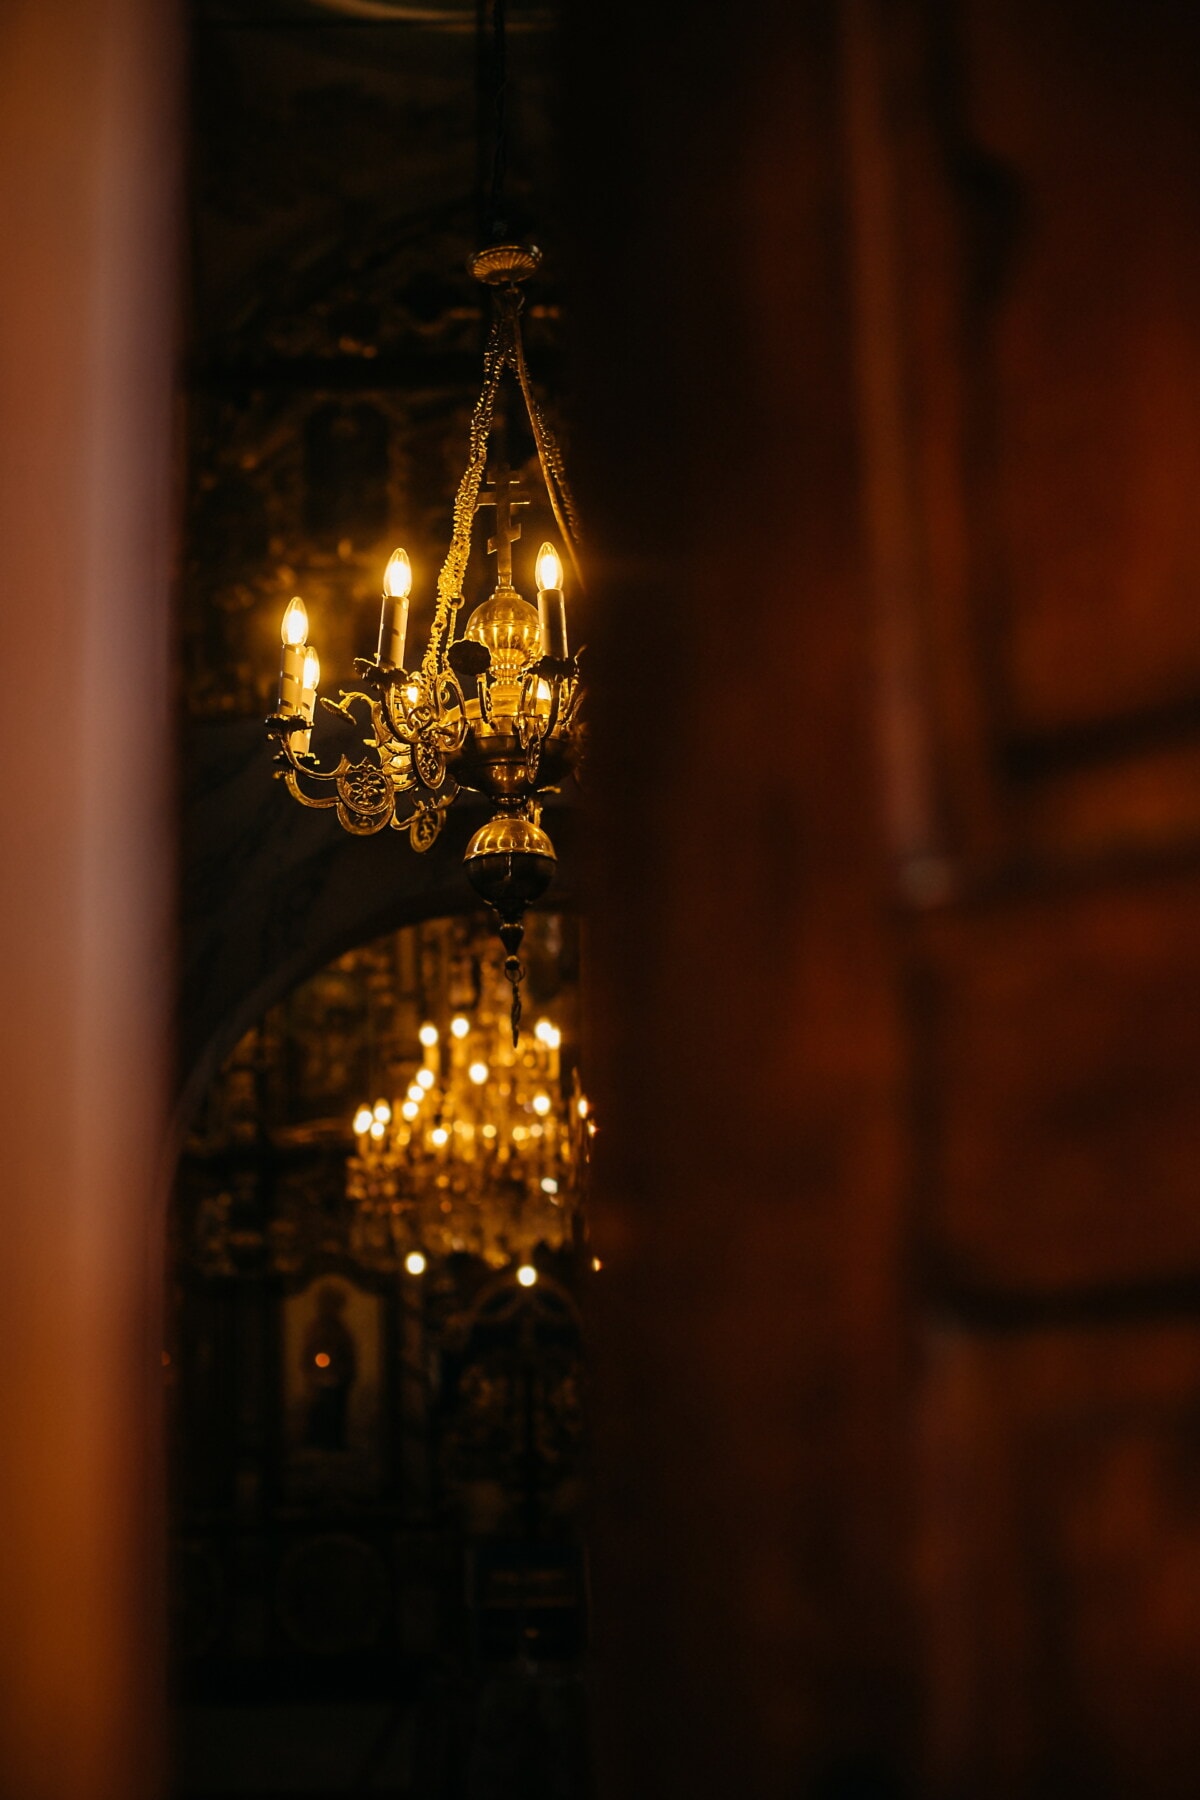 ánh sáng vàng, chính thống giáo, vàng, Nhà thờ, đèn chùm, nhà thờ, kiến trúc, trong nhà, chiếu sáng, ánh sáng